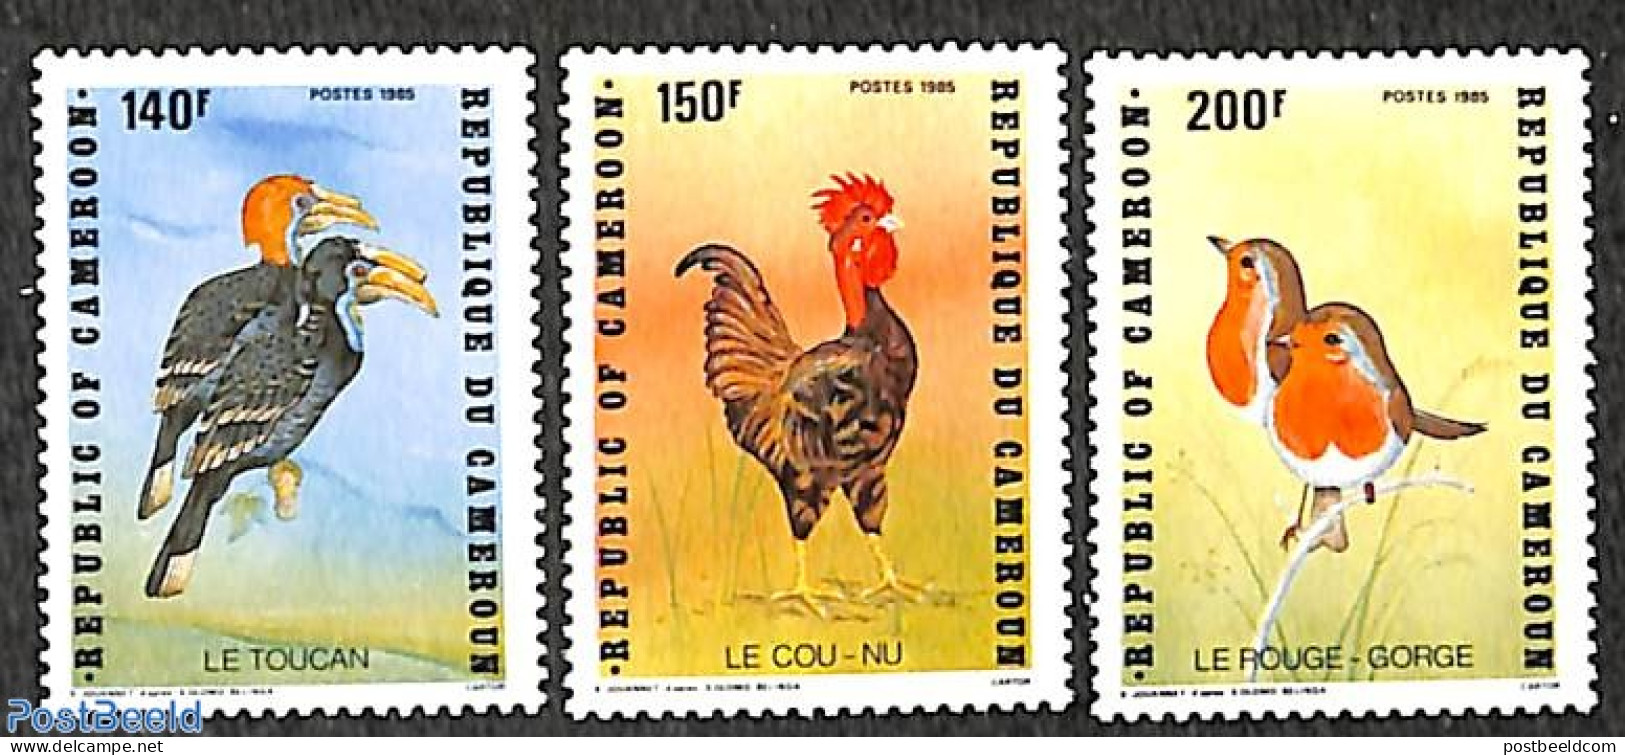 Cameroon 1985 Birds 3v, Mint NH, Nature - Birds - Poultry - Kamerun (1960-...)